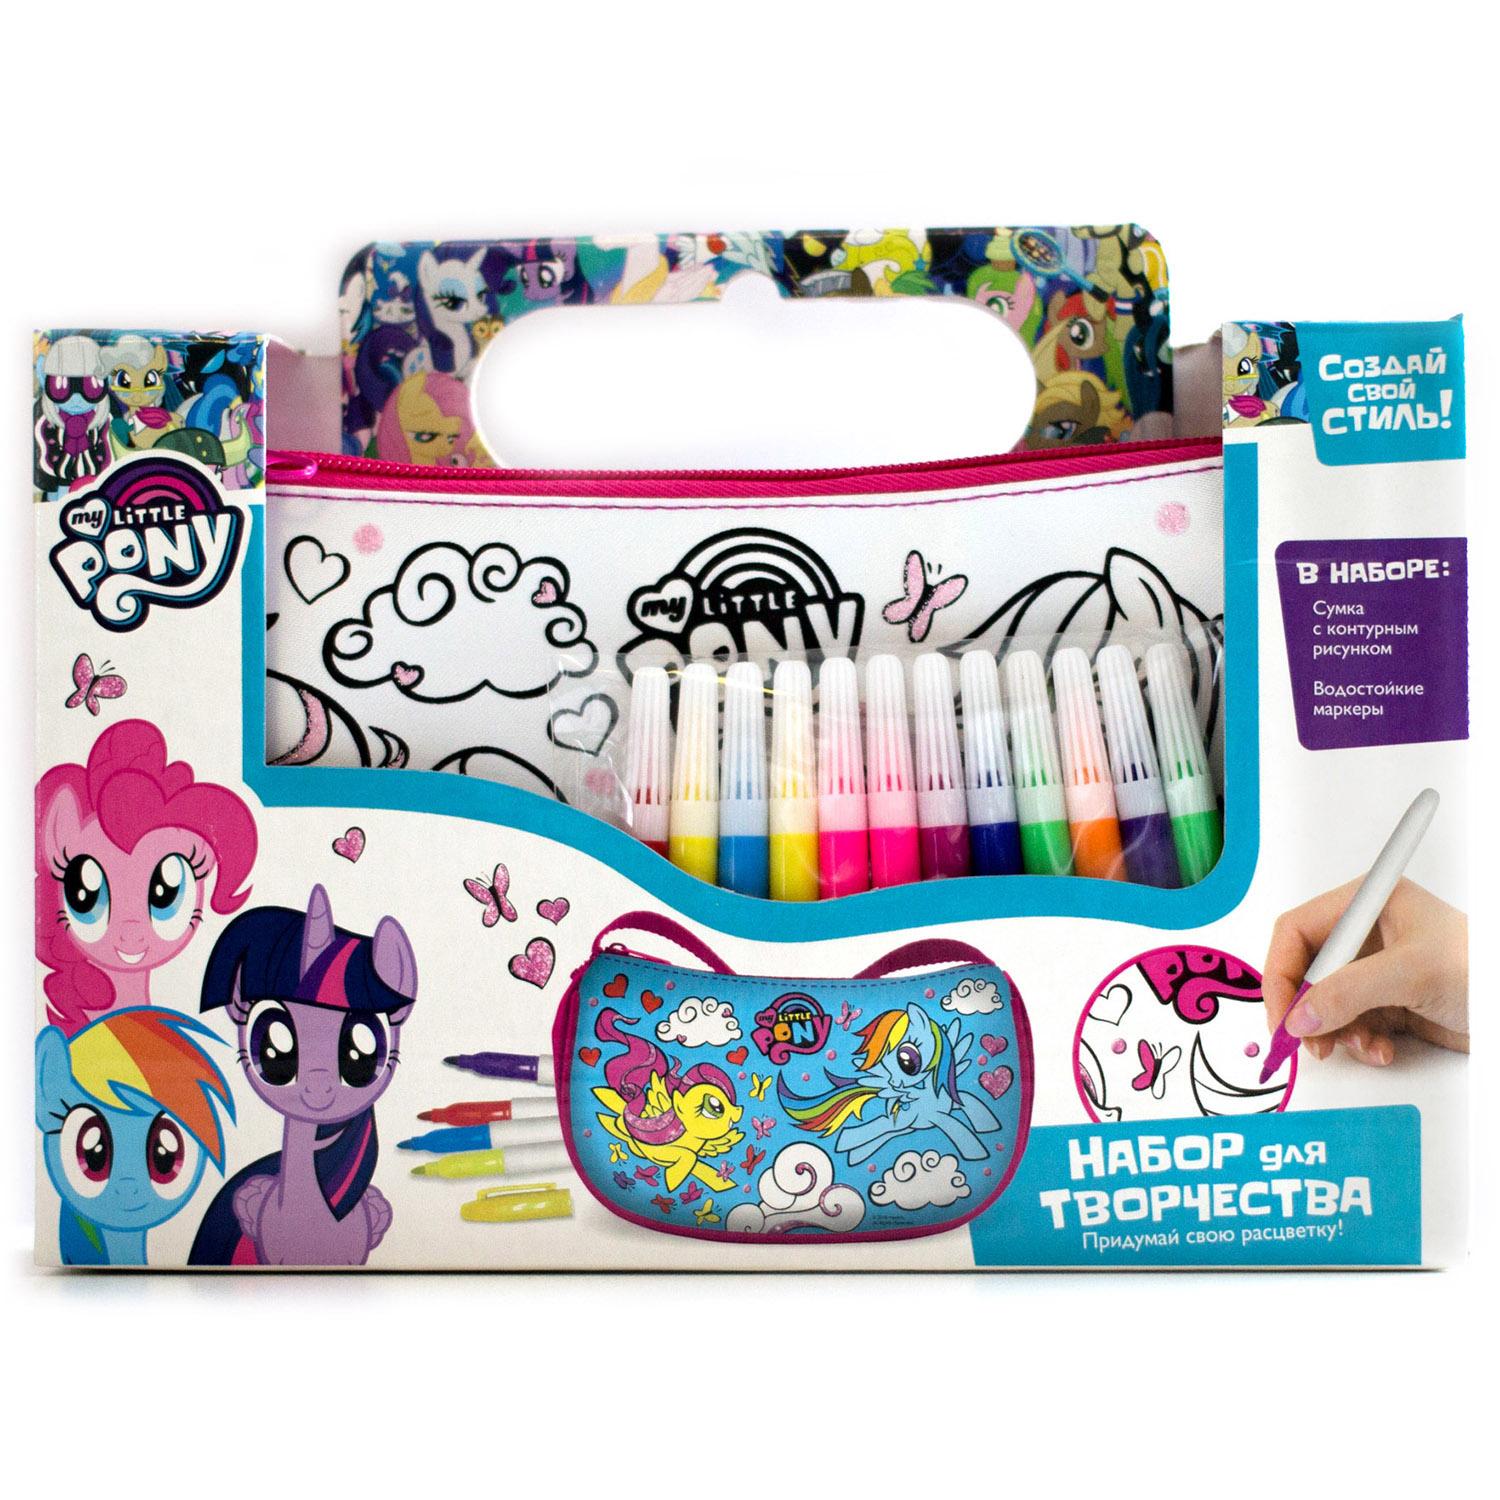 Мини-сумка для раскрашивания My little pony™ с маркерами  